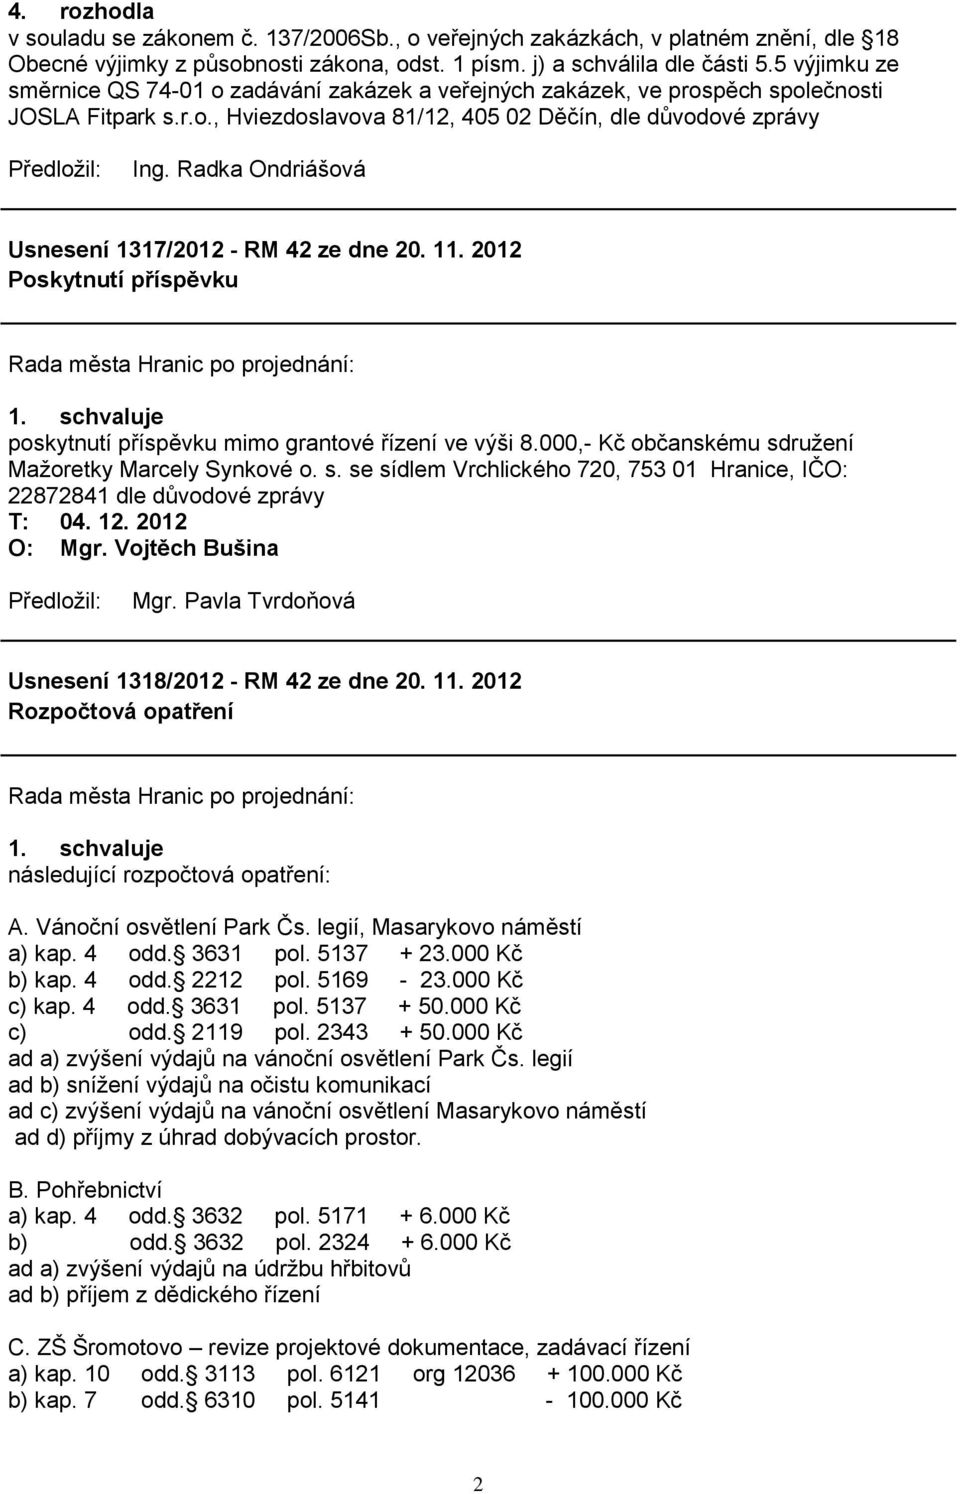 Radka Ondriášová Usnesení 1317/2012 - RM 42 ze dne 20. 11. 2012 Poskytnutí příspěvku poskytnutí příspěvku mimo grantové řízení ve výši 8.000,- Kč občanskému sd